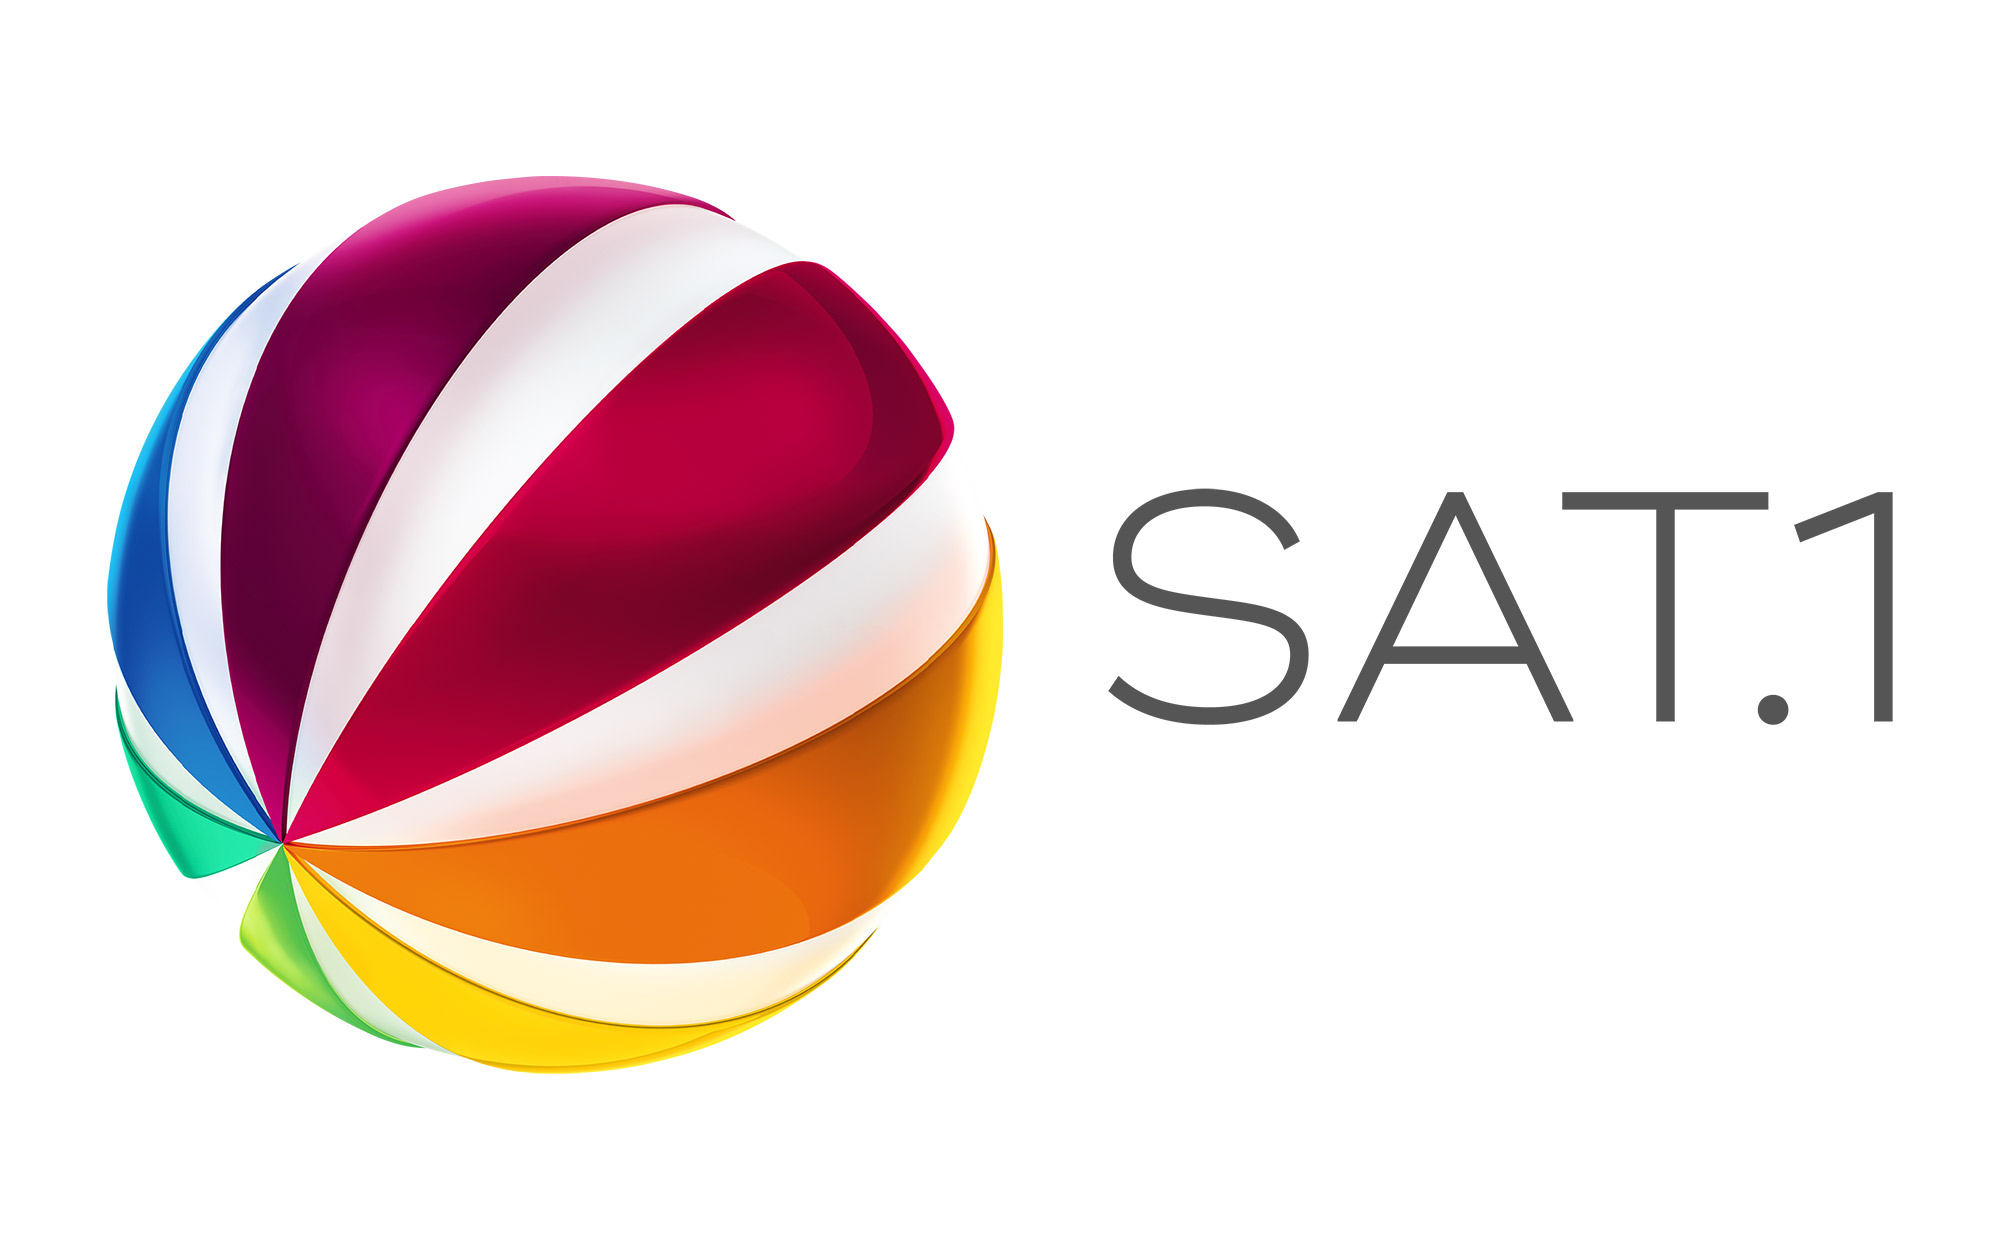 sat1-logo-rgb.jpg